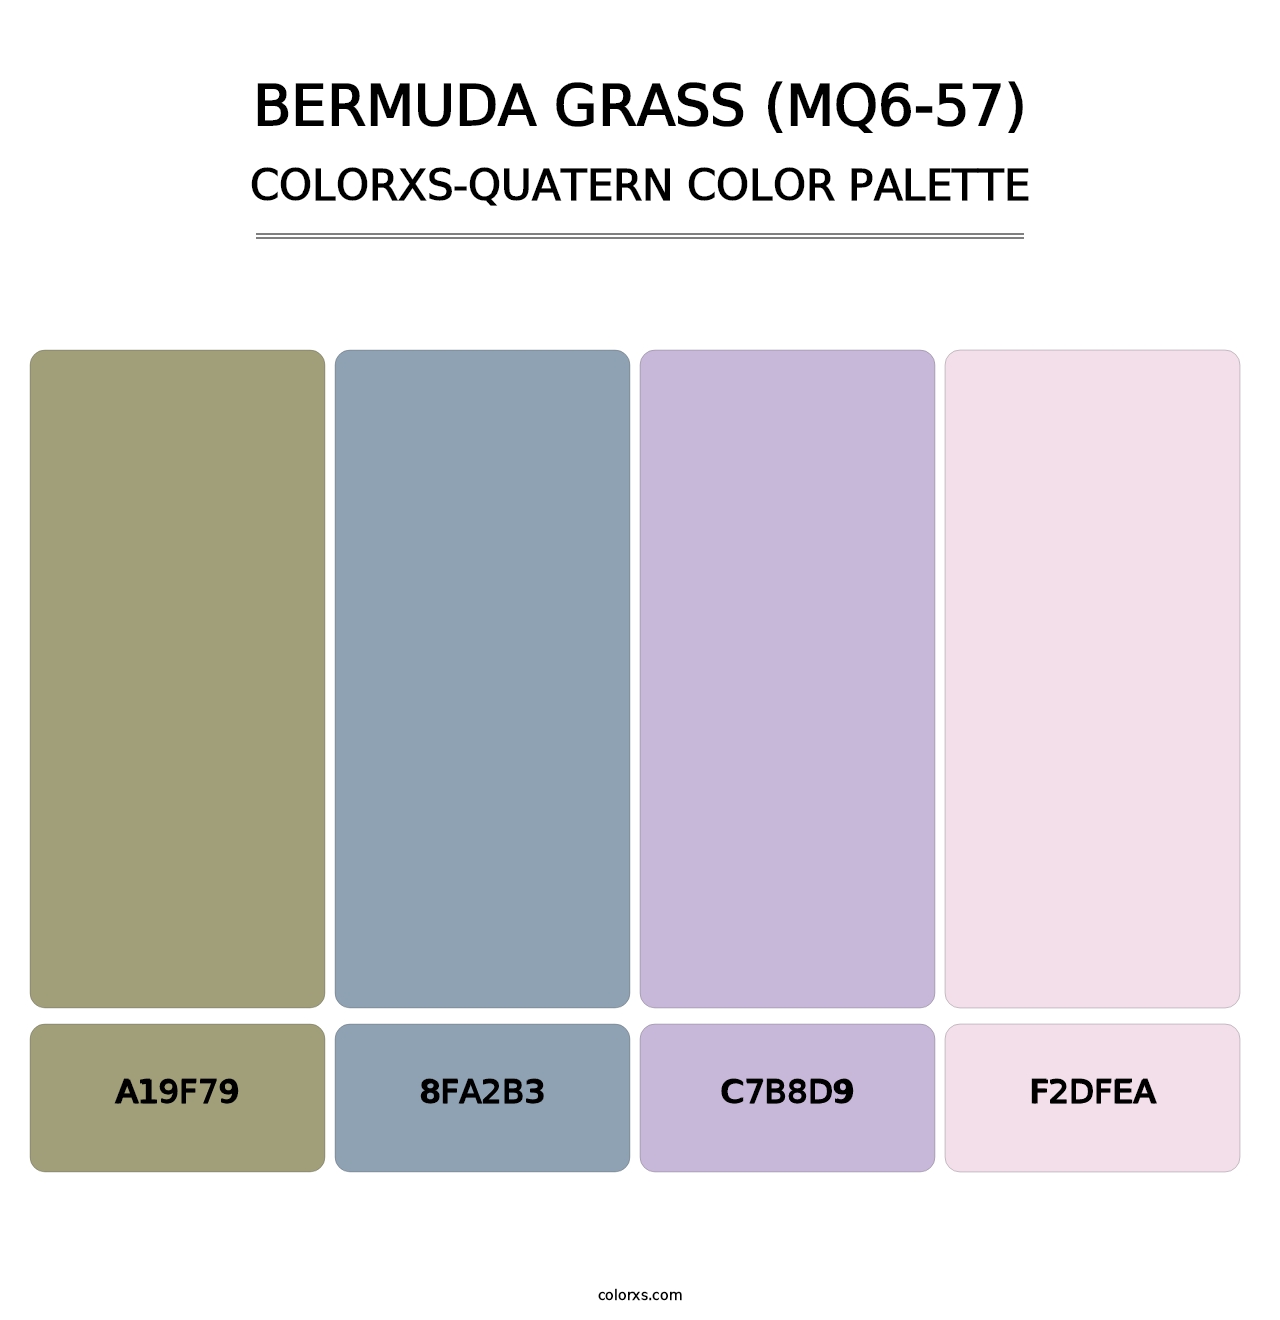 Bermuda Grass (MQ6-57) - Colorxs Quatern Palette